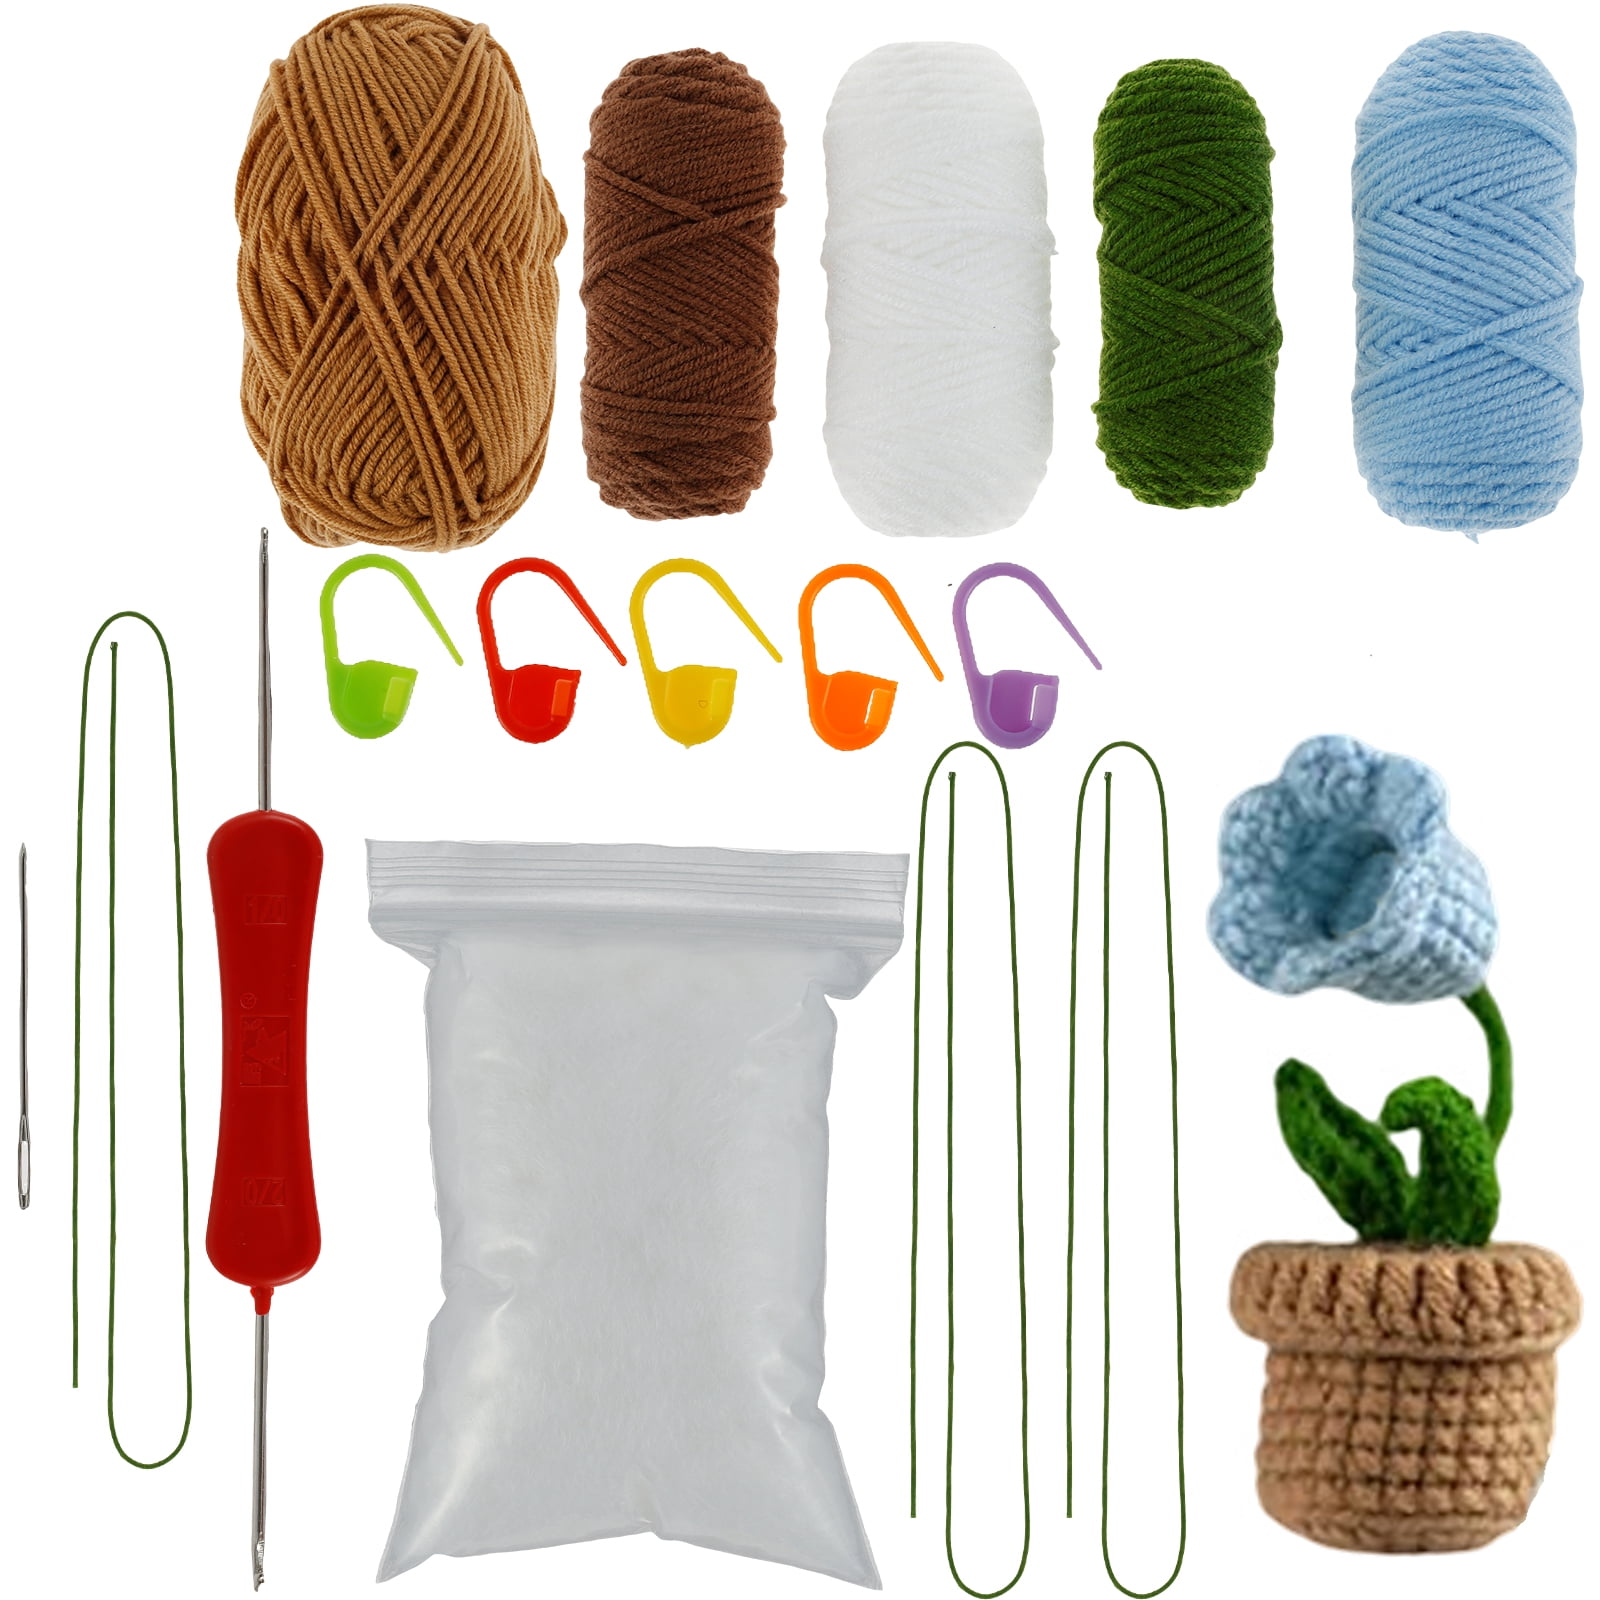  LOKUNN Crochet Kit for Beginners, Crochet Potted